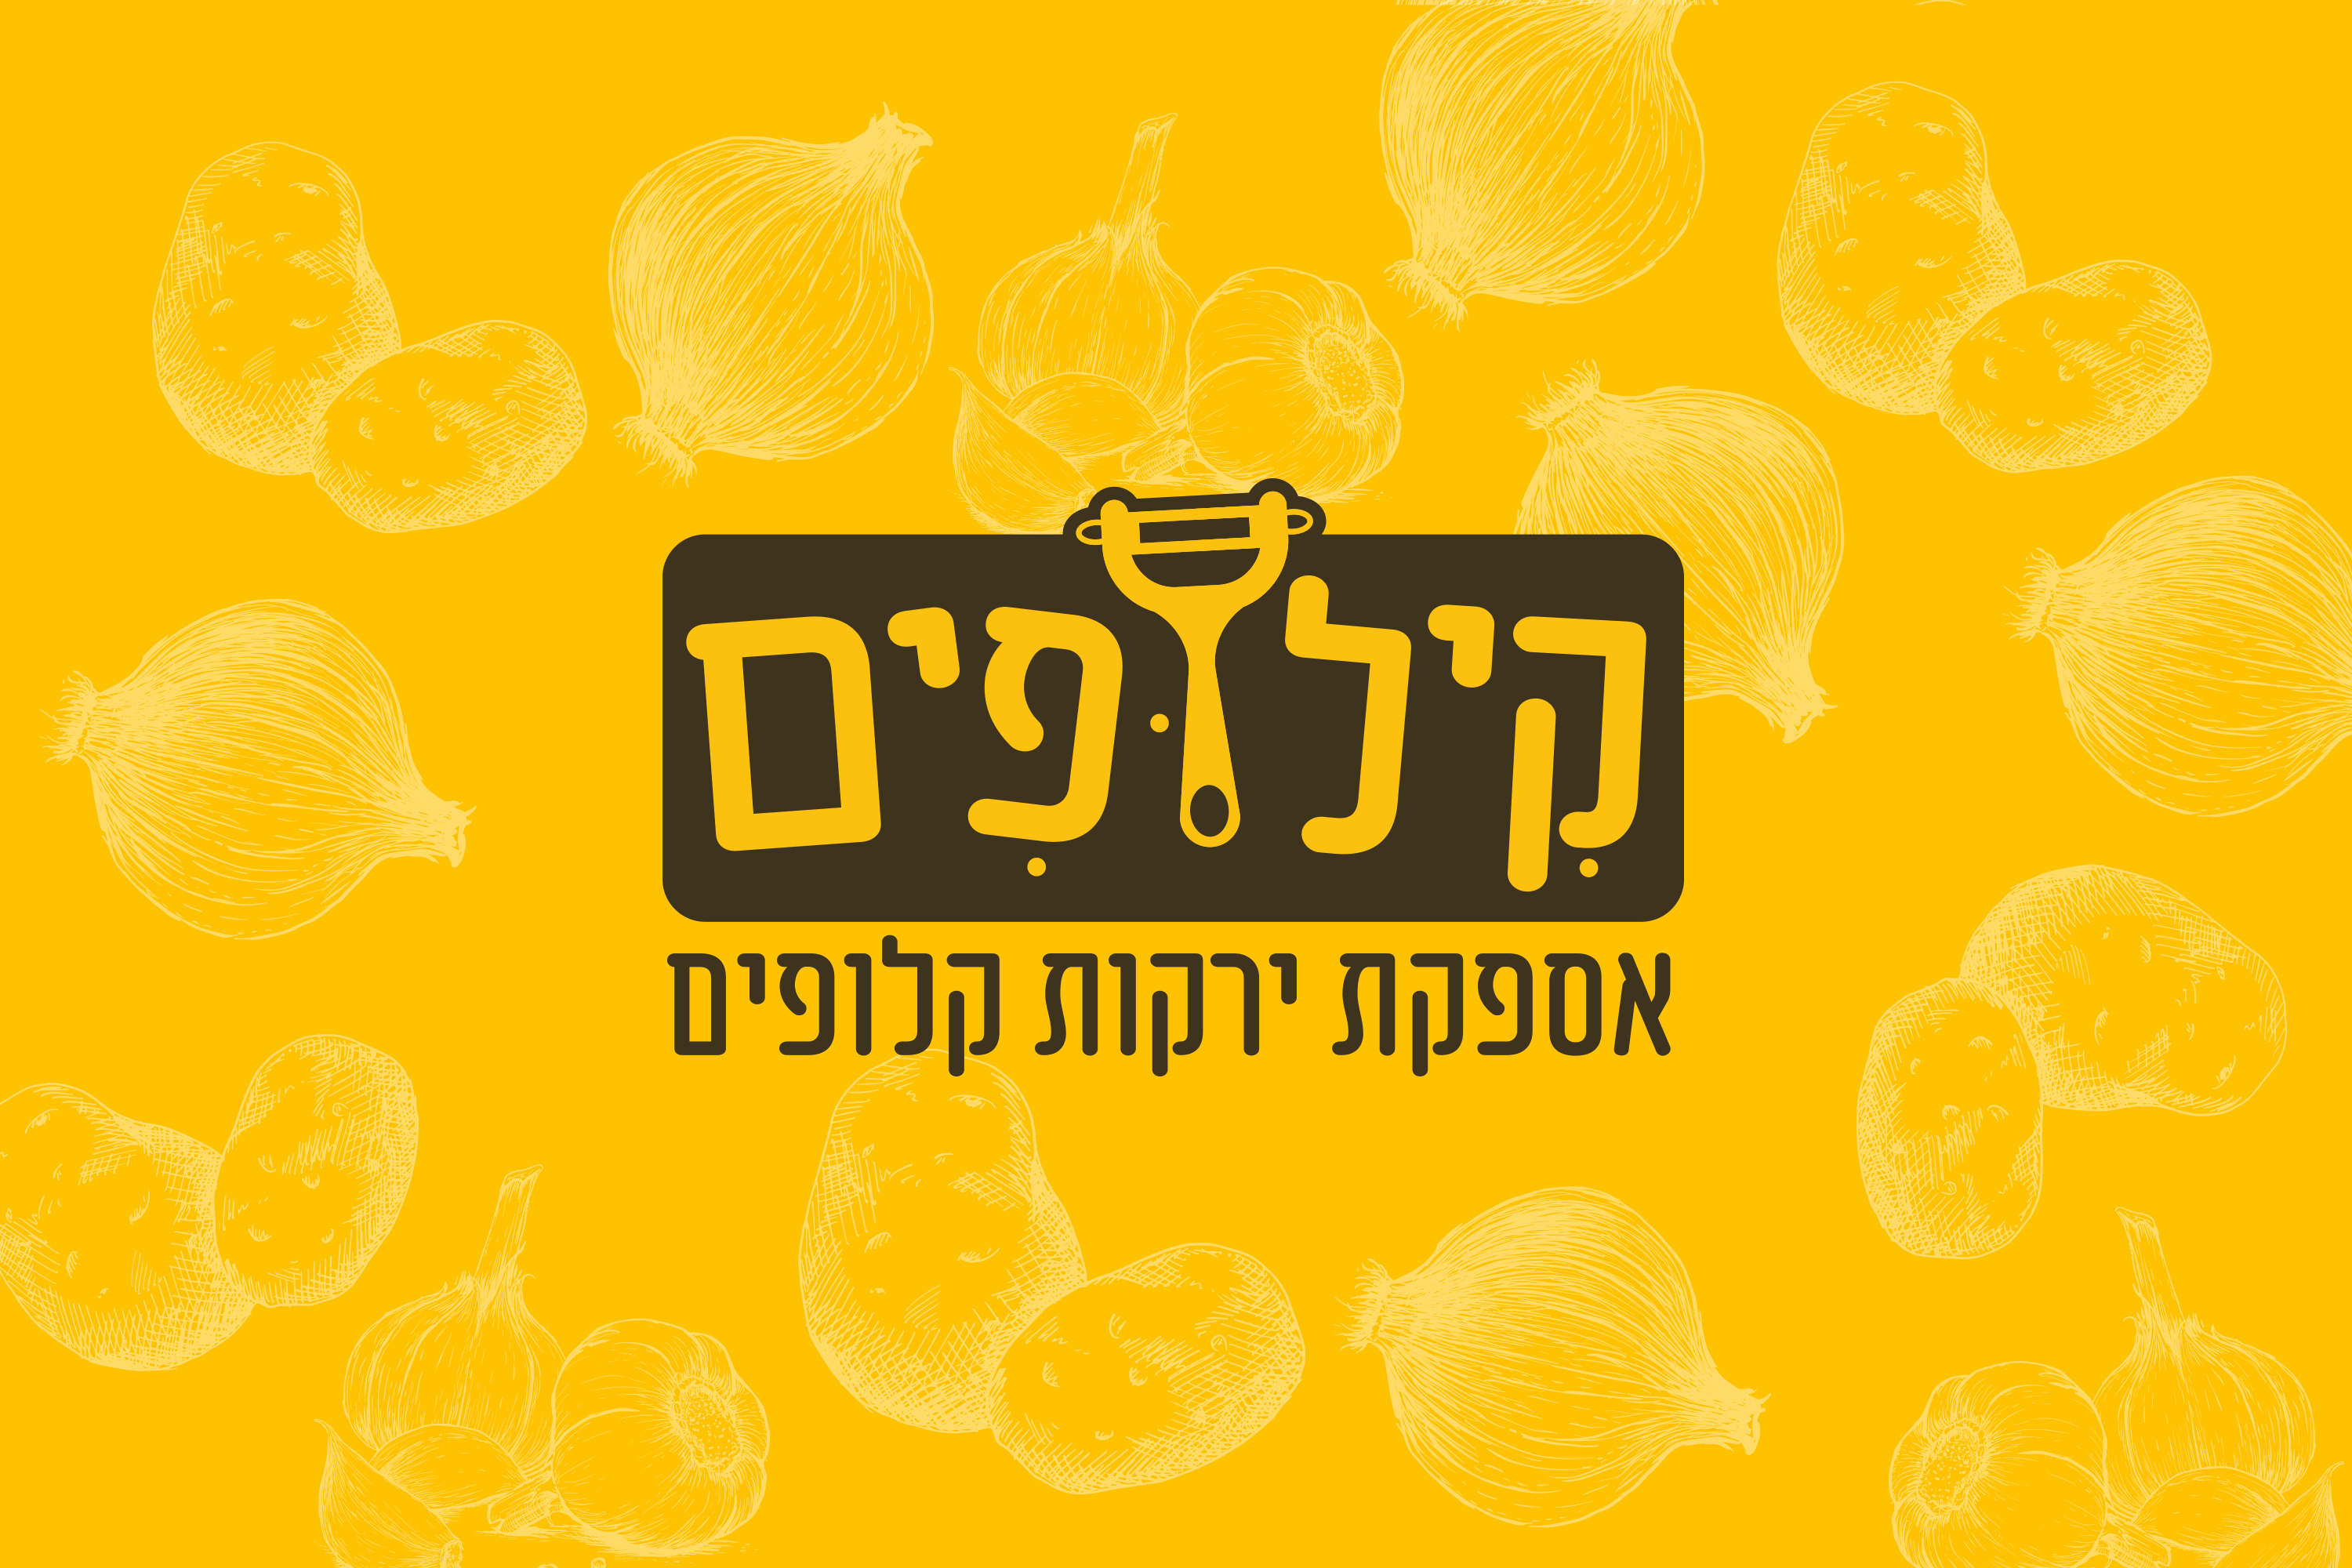 קילופים - לוגו לחברת קילוף ירקות